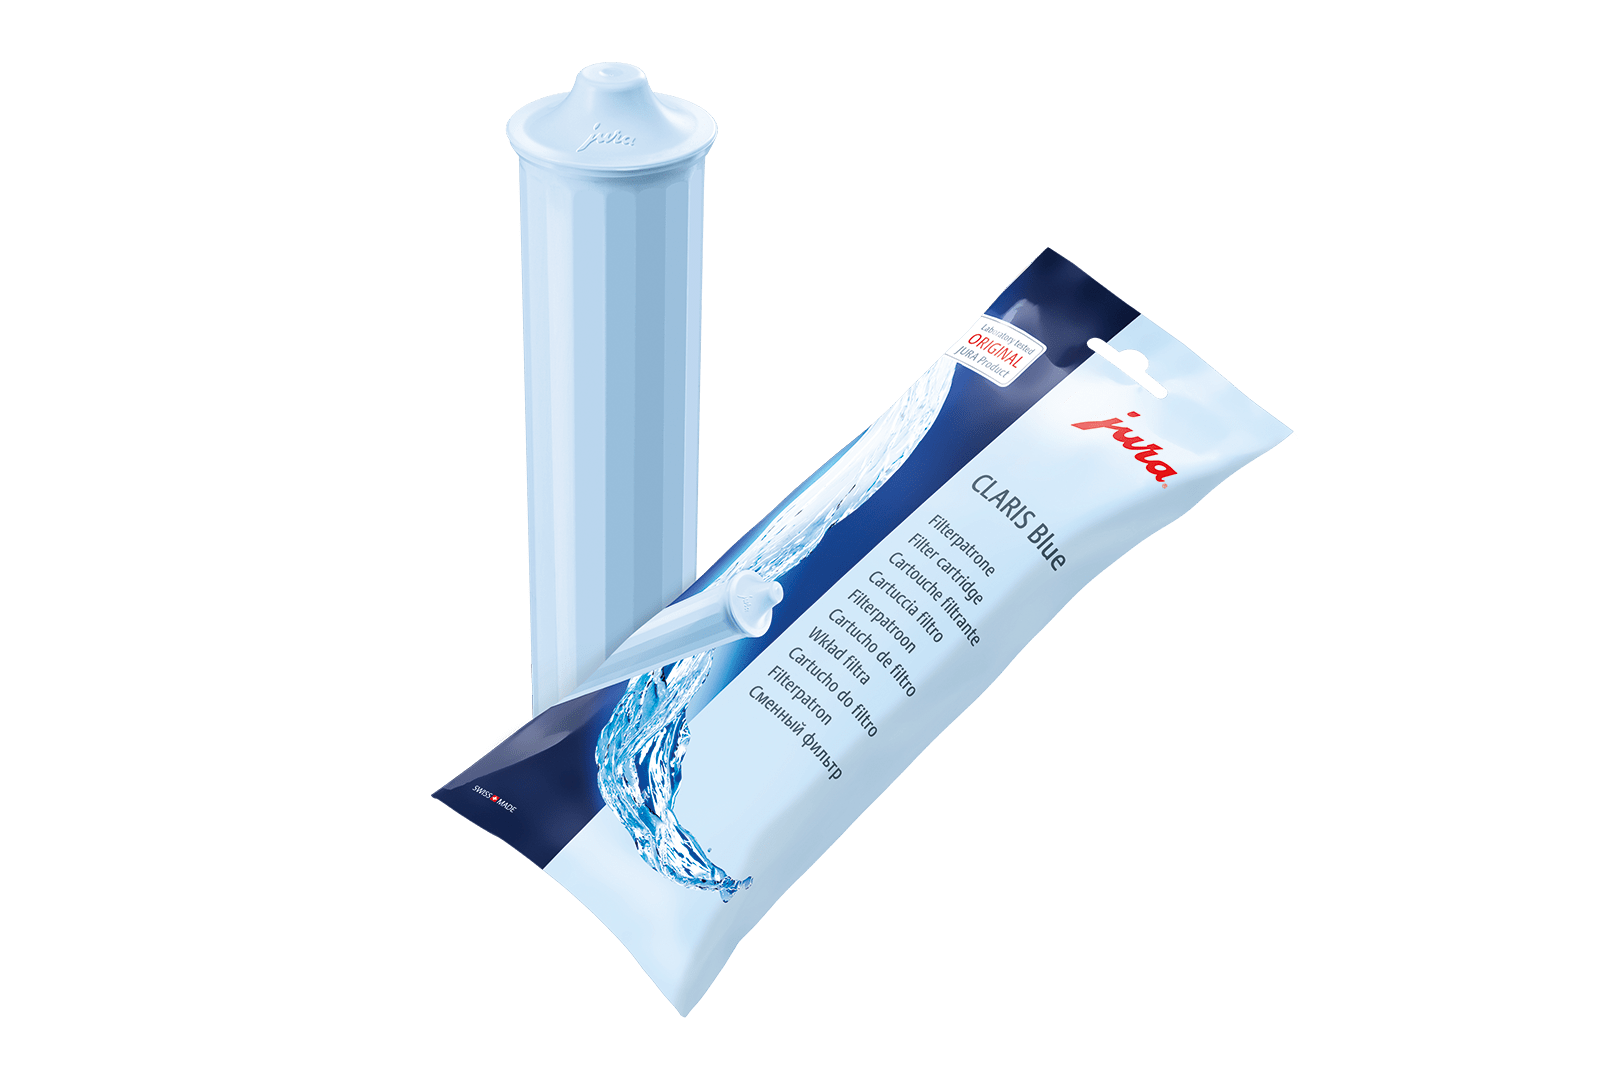 FILTRO acqua granulato 2,5 L adatto per REFILL Cartuccia Filtro Jura Impressa ENA 